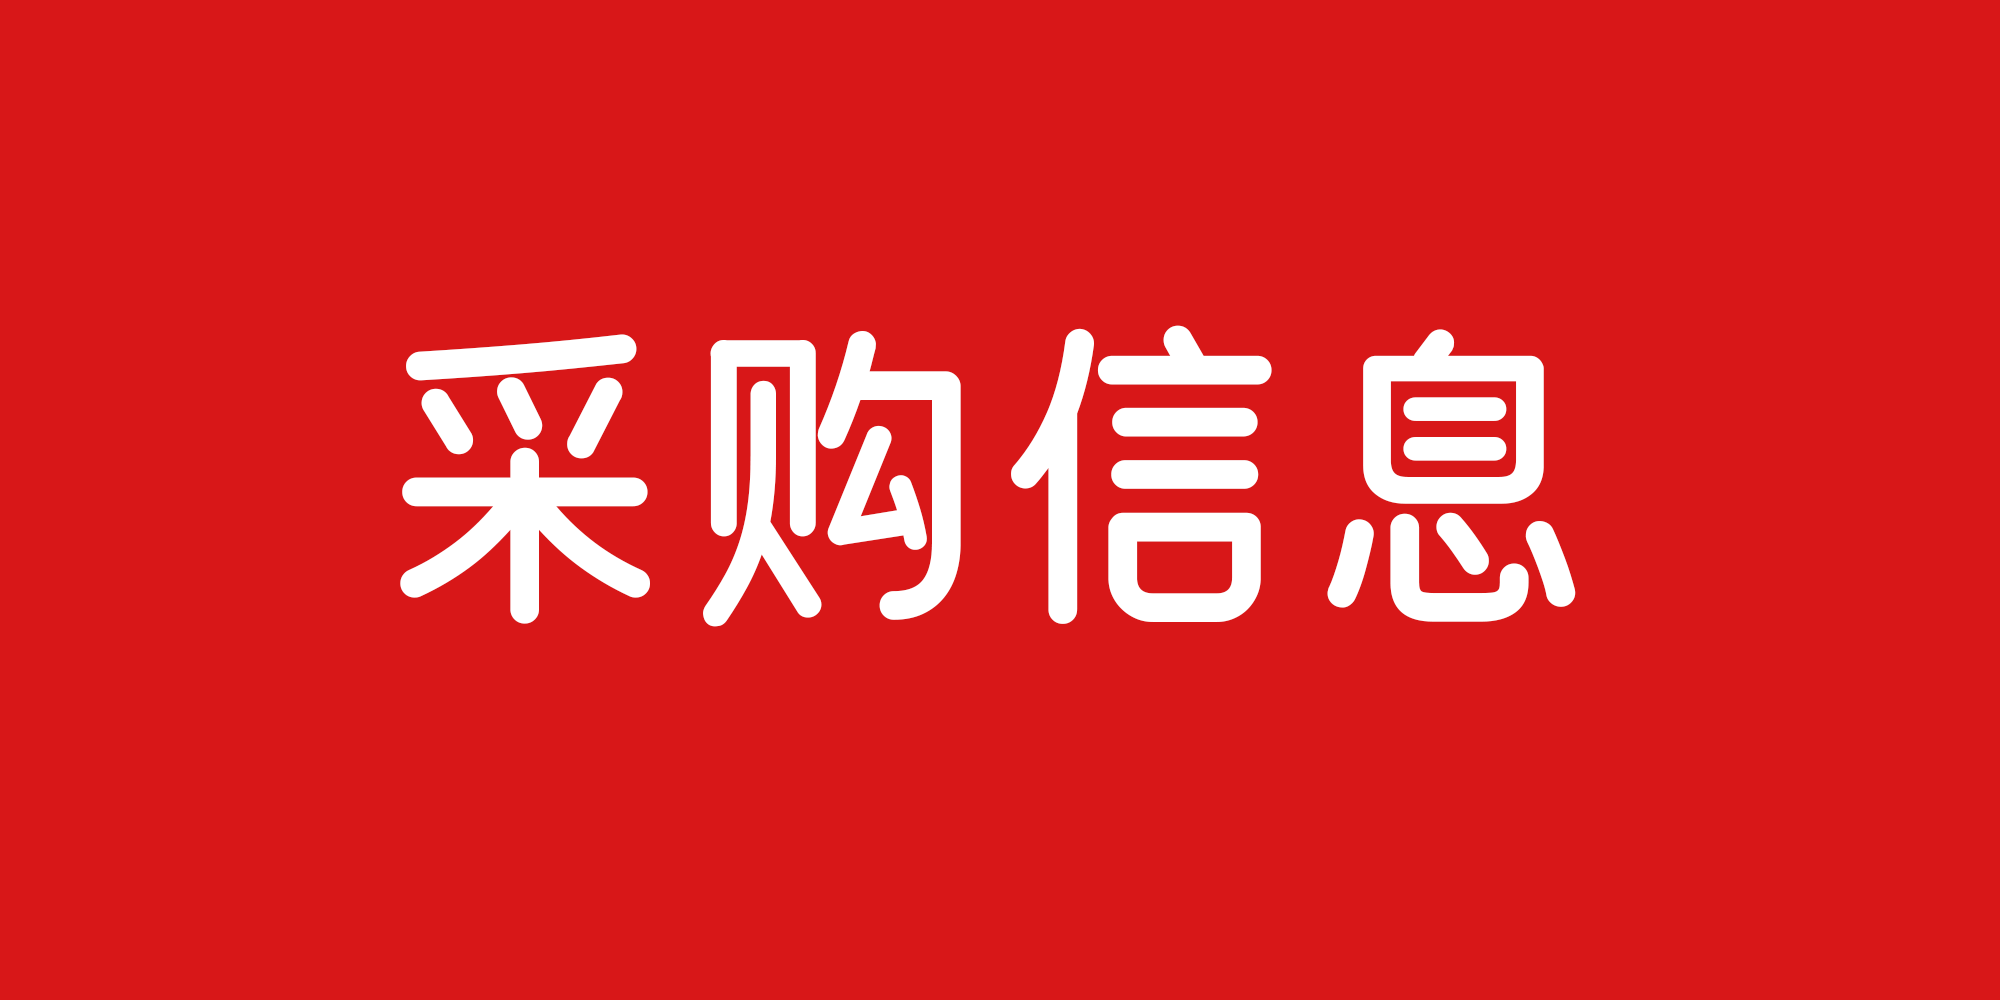 湖南衡阳华夏陵园寻求提供「影雕服务」的供应商